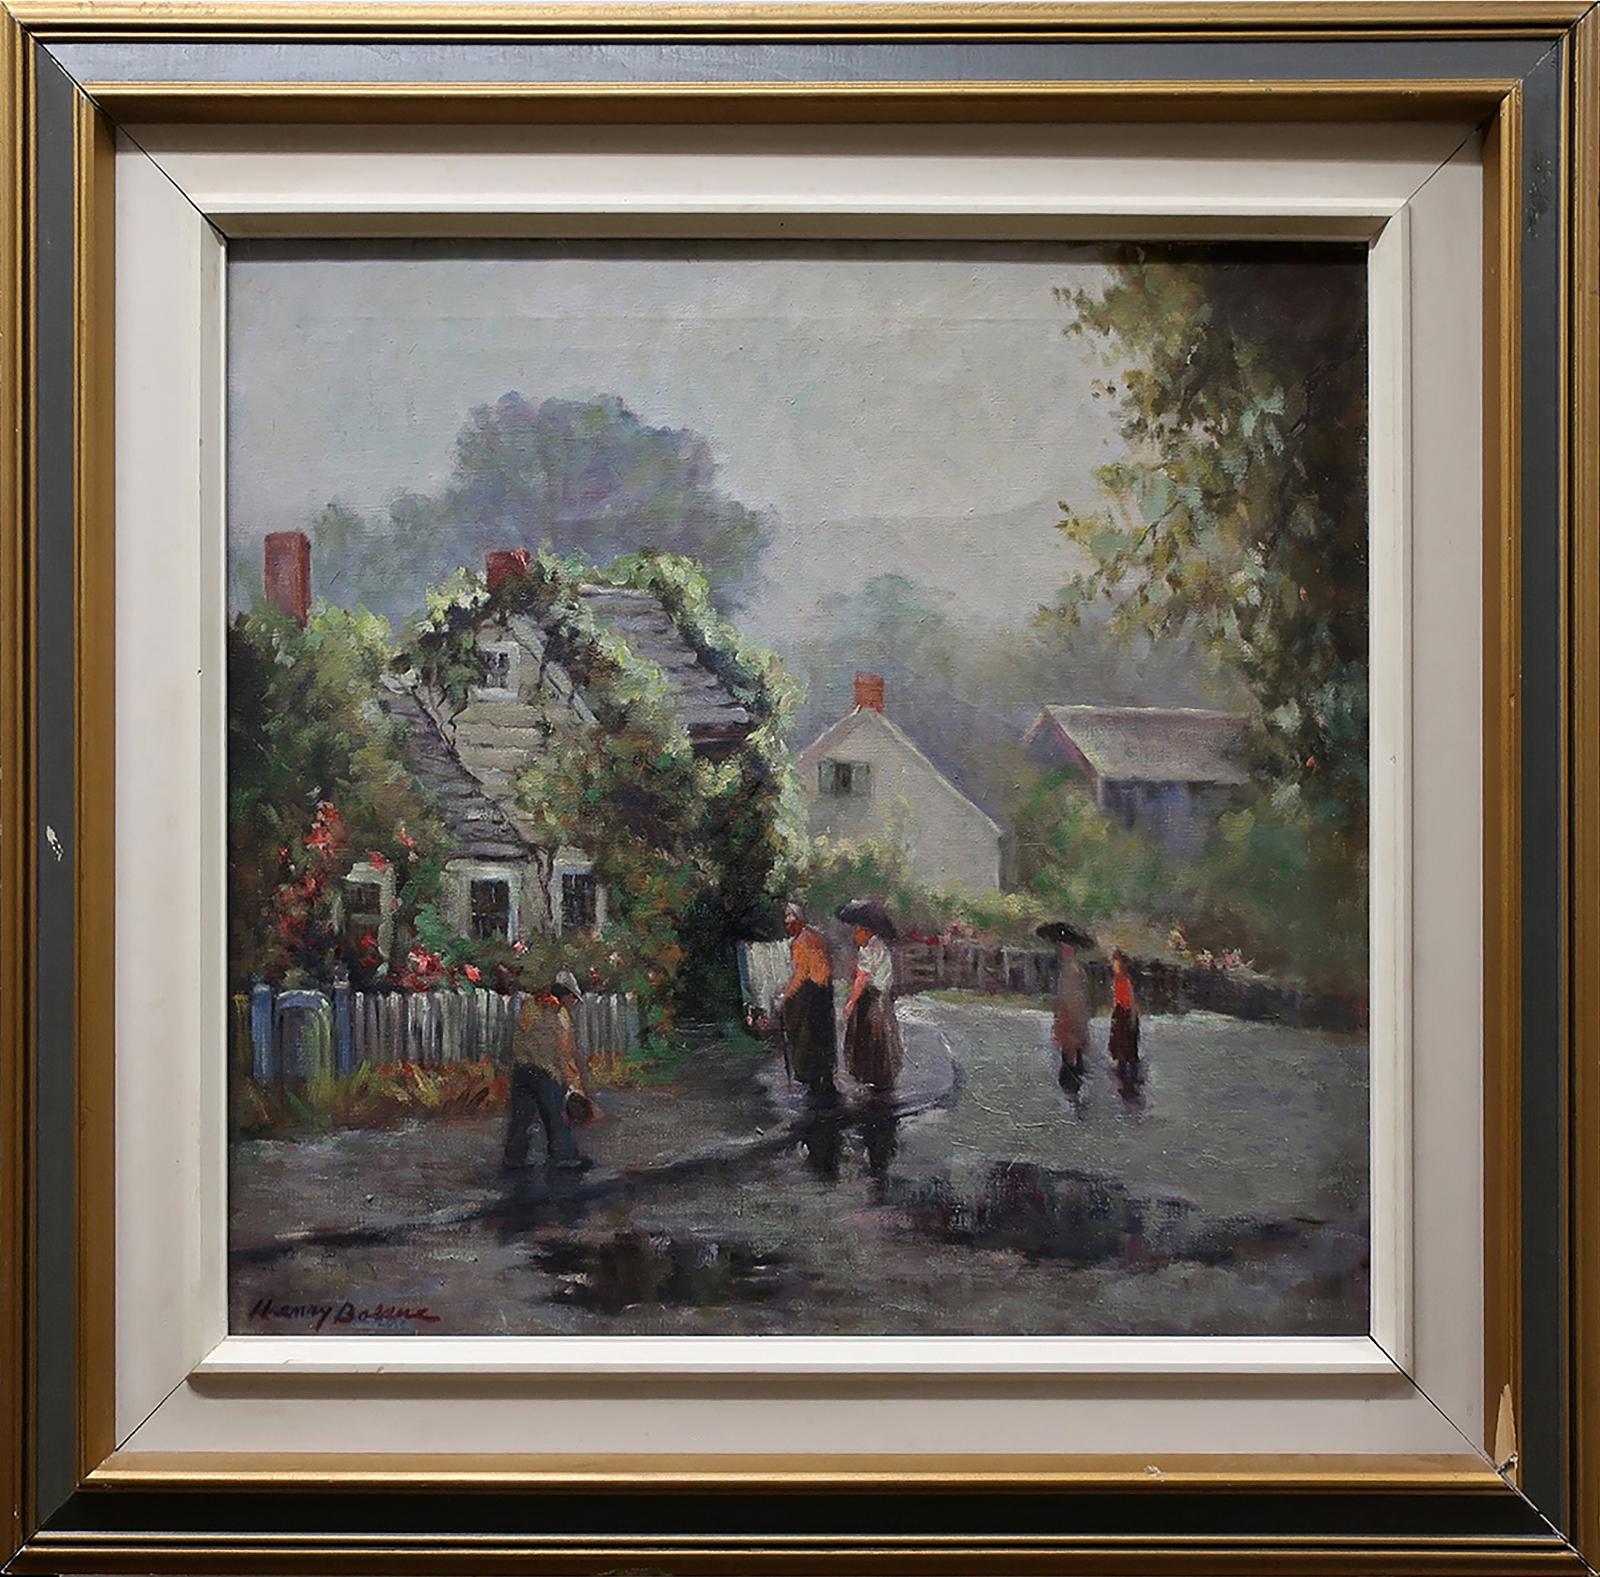 Henry Bolduc - Untitled (Rainy Village Day)